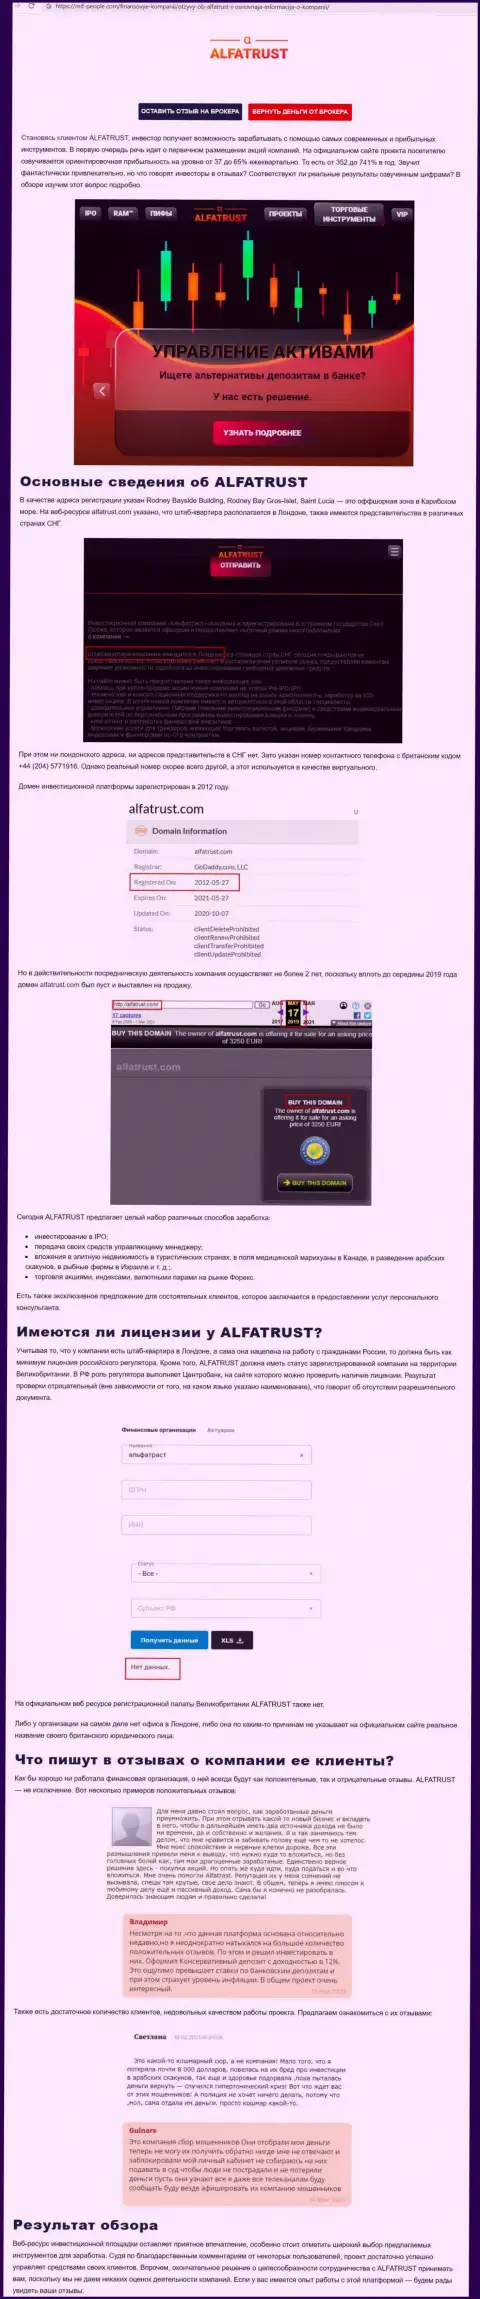 Сайт mif people com разместил сведения о forex дилинговой компании АльфаТраст